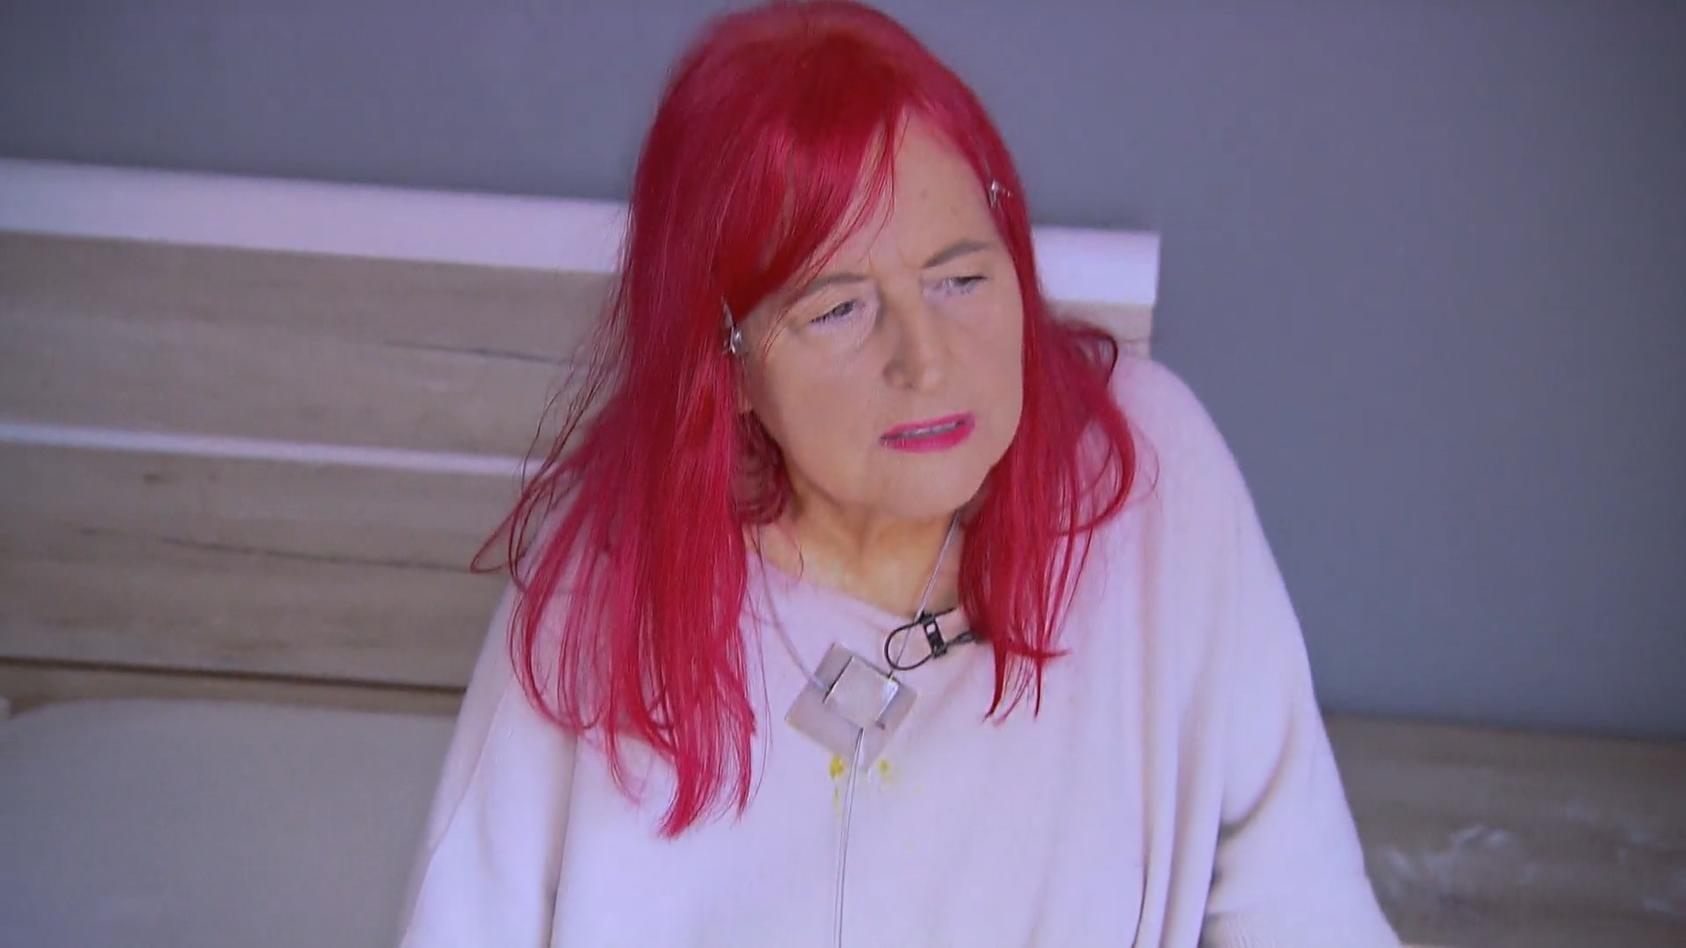 Horror-Mieterin lässt Seniorin auf 10.000 Euro sitzen "Lügengespinste von Anfang an"